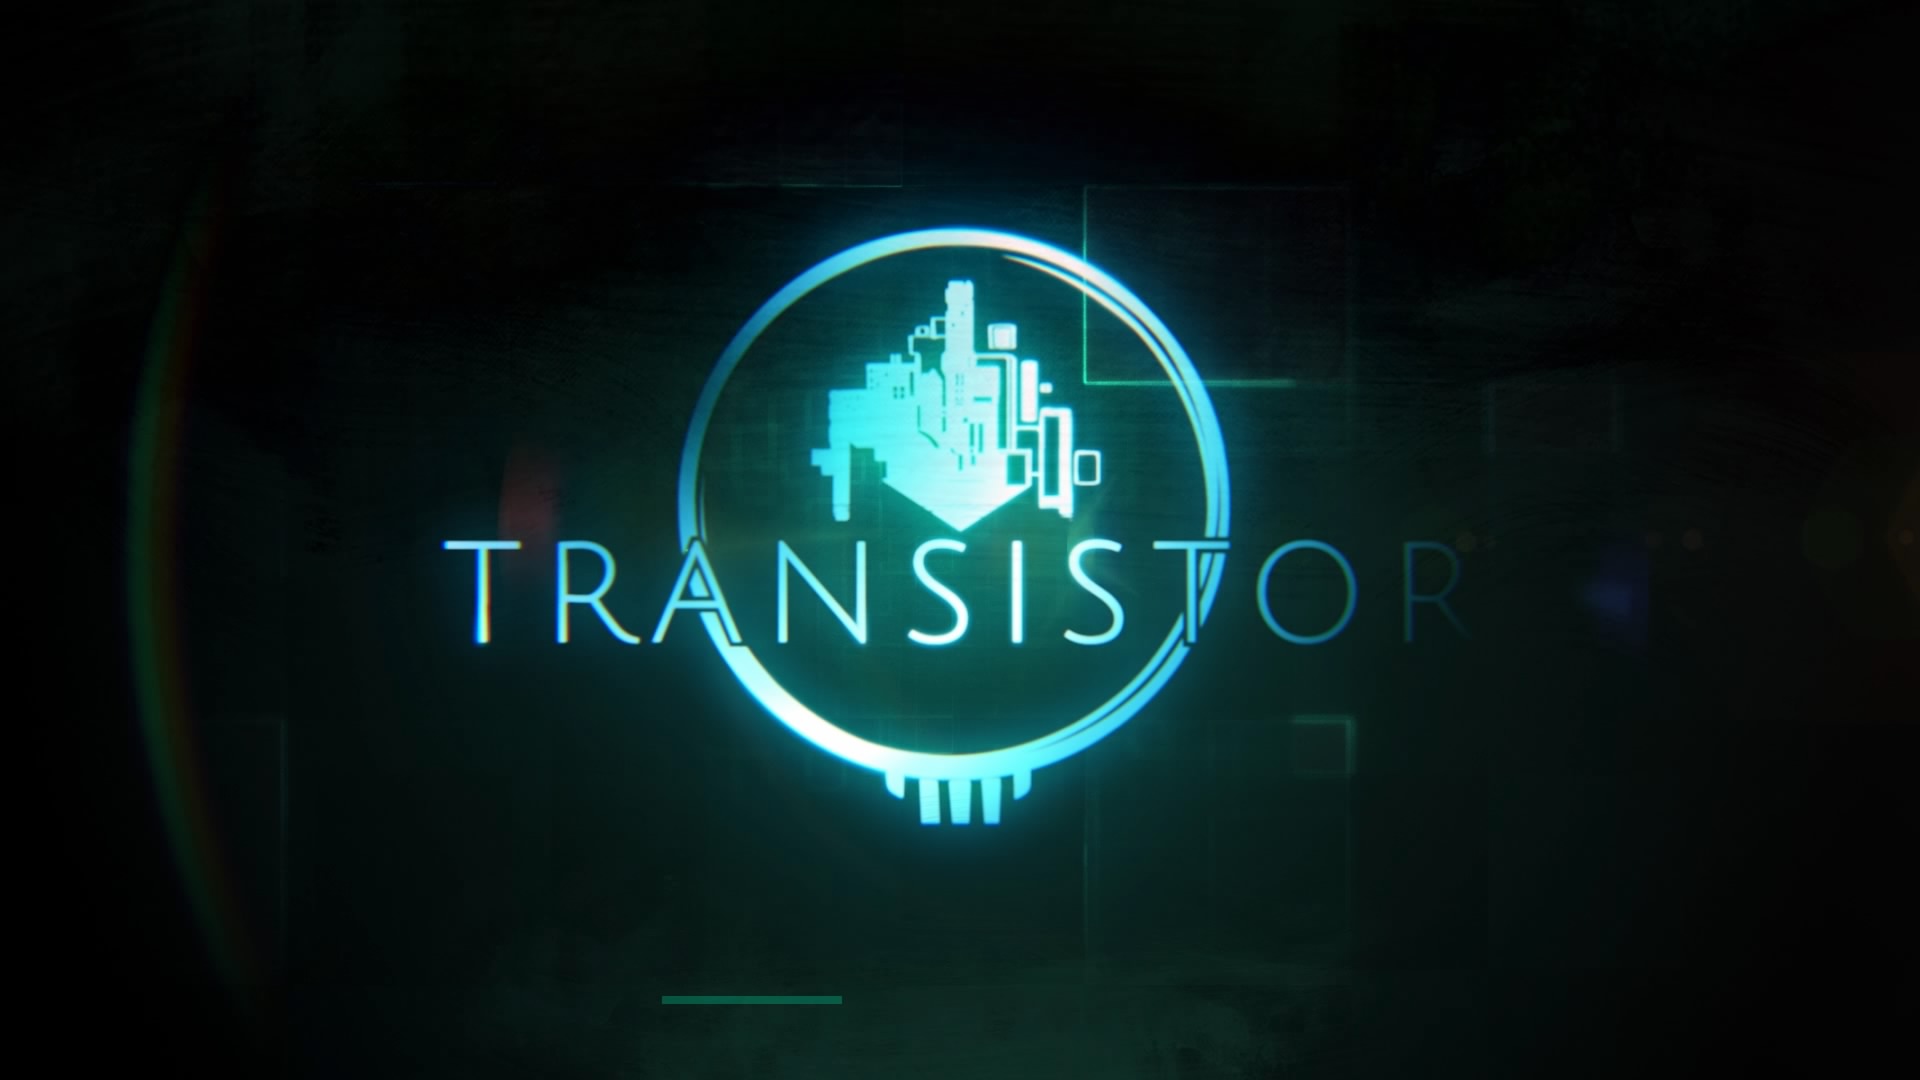 Transistor_20150206215257.jpg